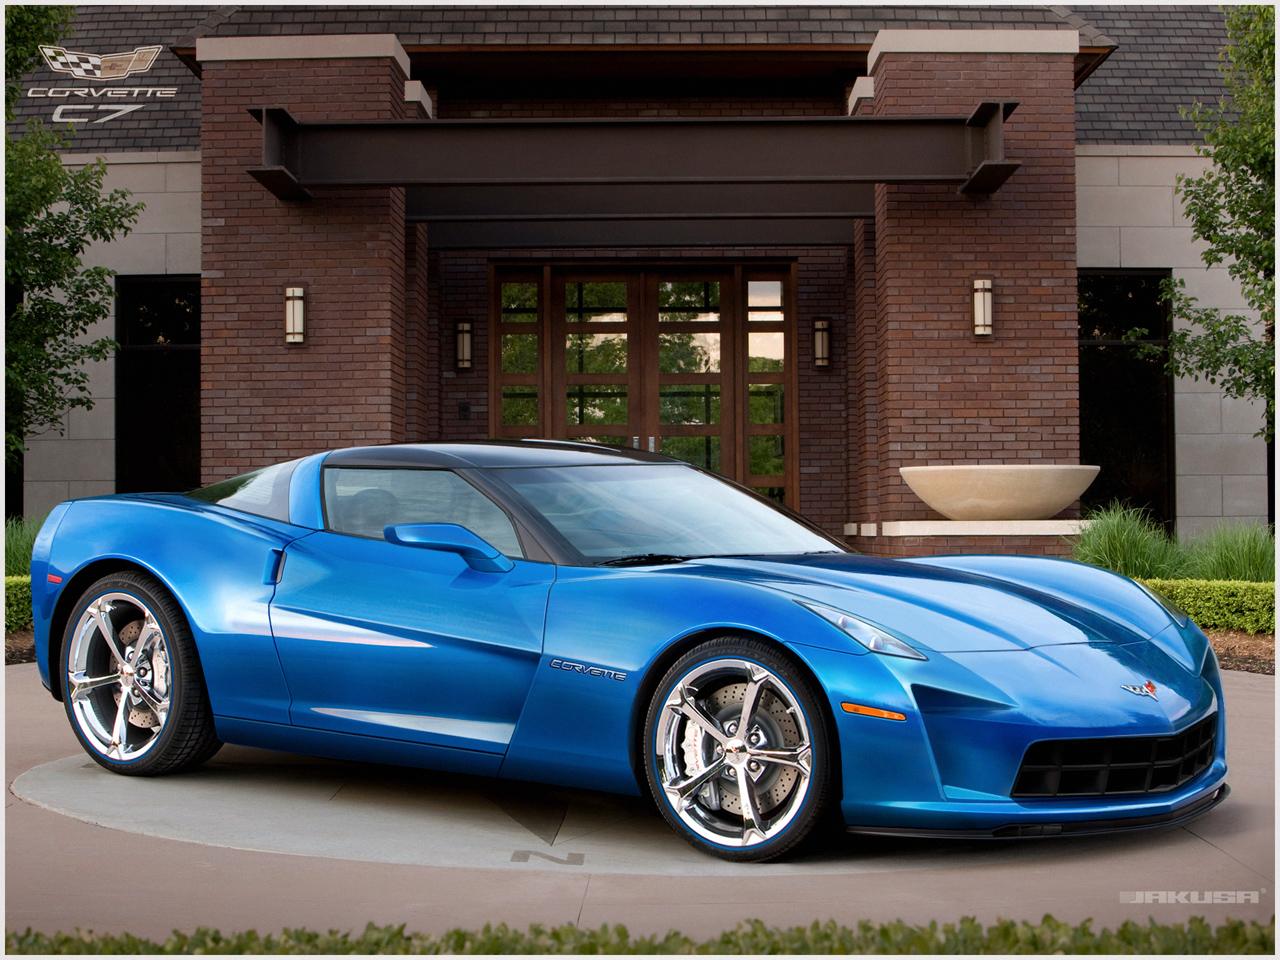 http://3.bp.blogspot.com/-7vE02GUrSQ4/TdTtMkl8E_I/AAAAAAAAAcs/w_mfHyboR_E/s1600/2012-Blue-Corvette-C7-Stingray-Sports-Car.jpg